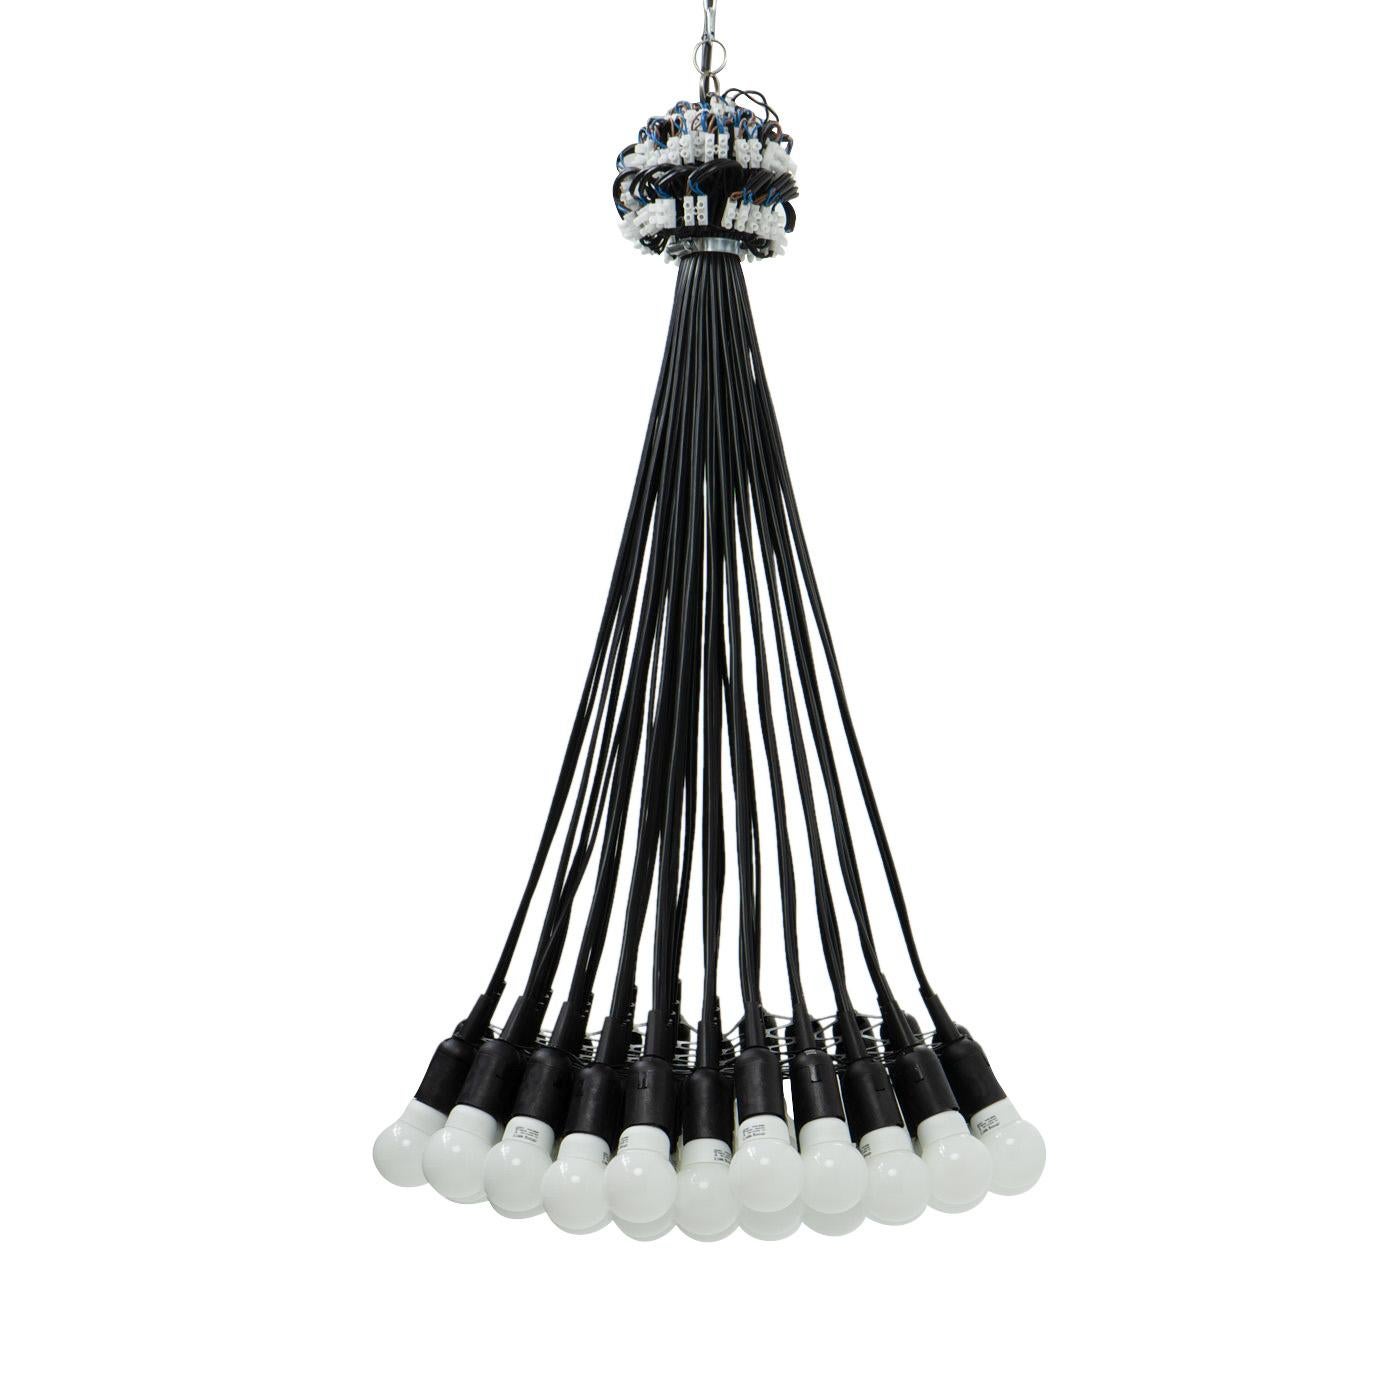 Une lampe qui n'utilise que les éléments les plus essentiels pour créer de la lumière : ampoules, fils et connecteurs :

La lampe 85, conçue par Rody Graumans pour Droog Design dans les années 1990, est un plafonnier unique et emblématique. Elle